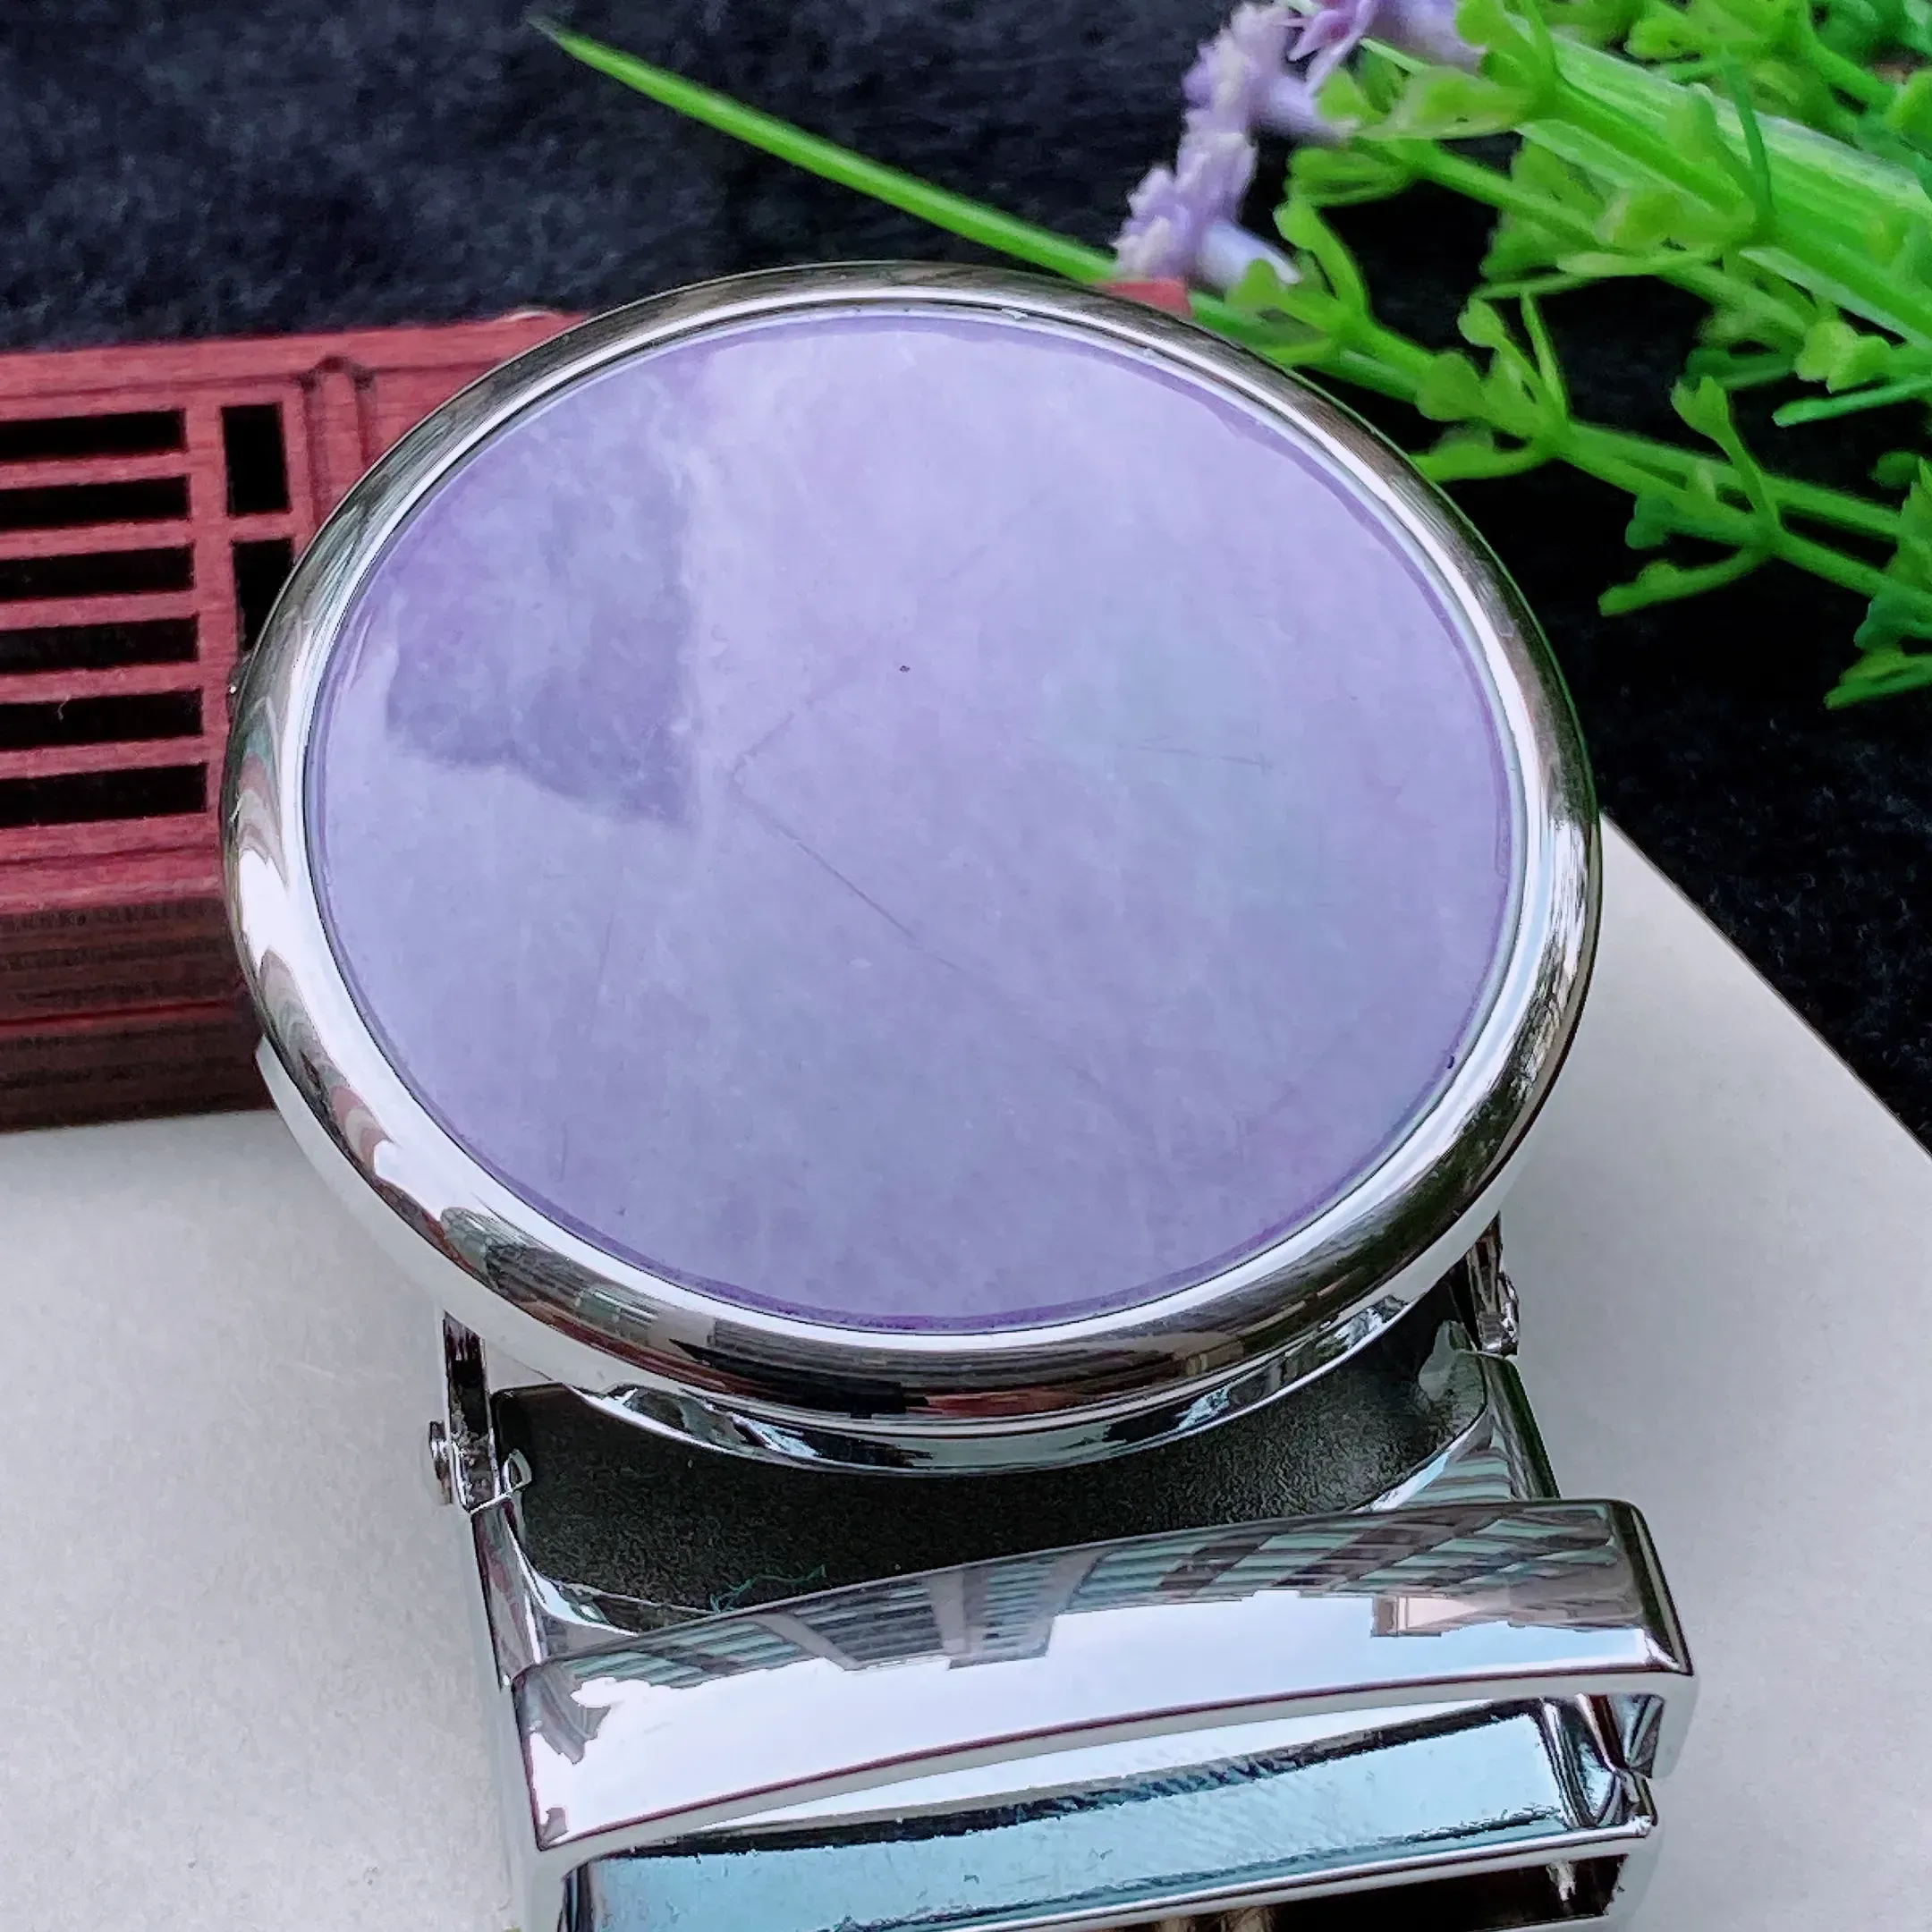 自然光实拍  水润精工细腻紫罗兰皮带扣。玉质细腻莹润 雕工精湛，佩戴高雅大方   线条优美  awx尺寸:   68/51.3/17.5mm。